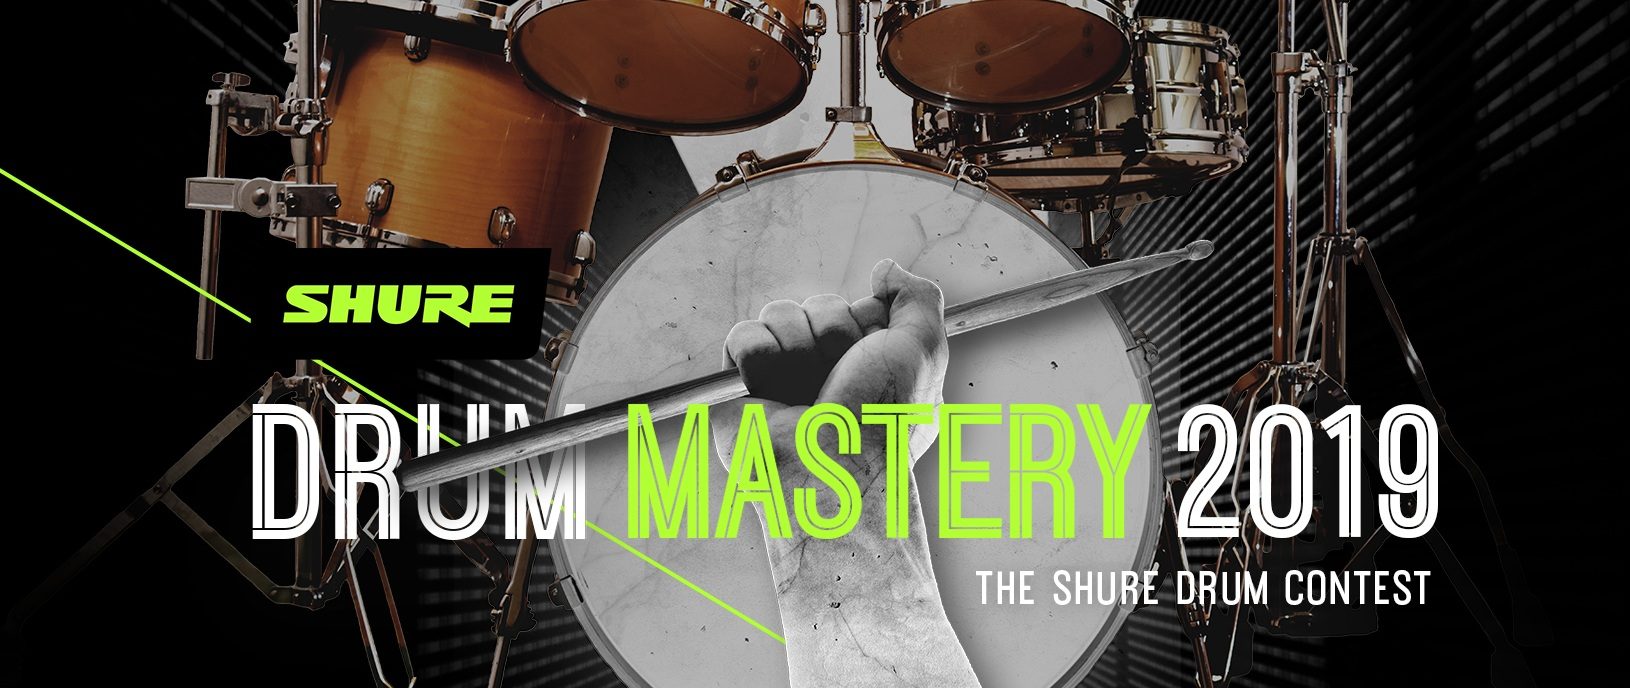 shure-drum-mastery-2019-e1de